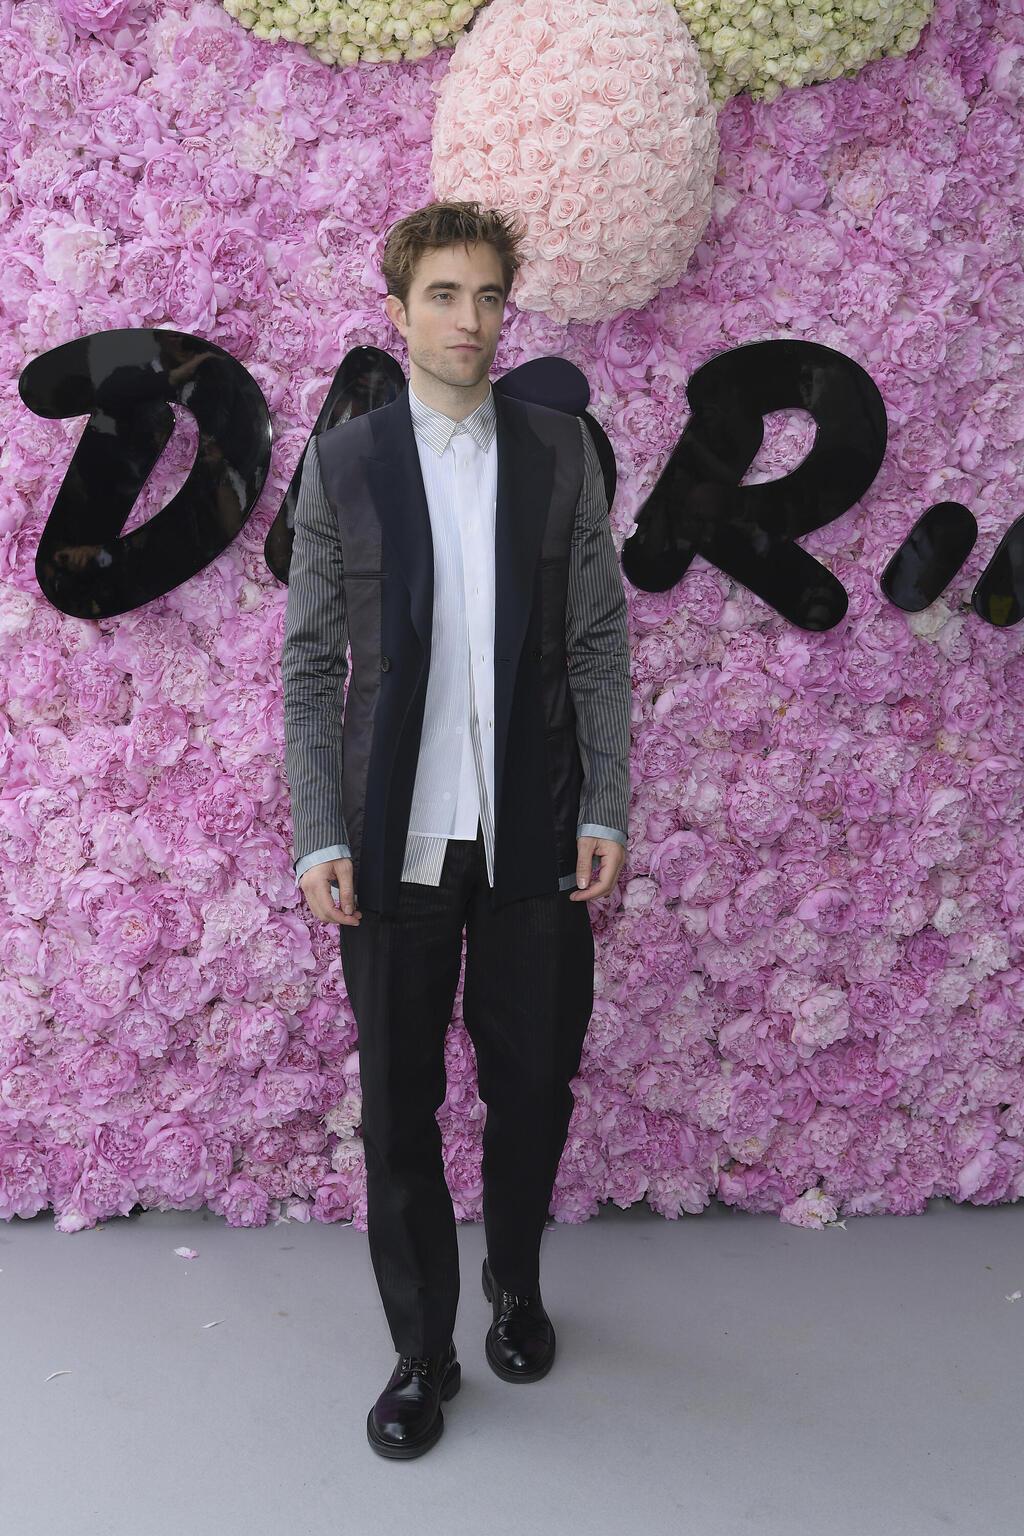 רוברט פטינסון בתצוגת אופנה של דיור גברים, 2018